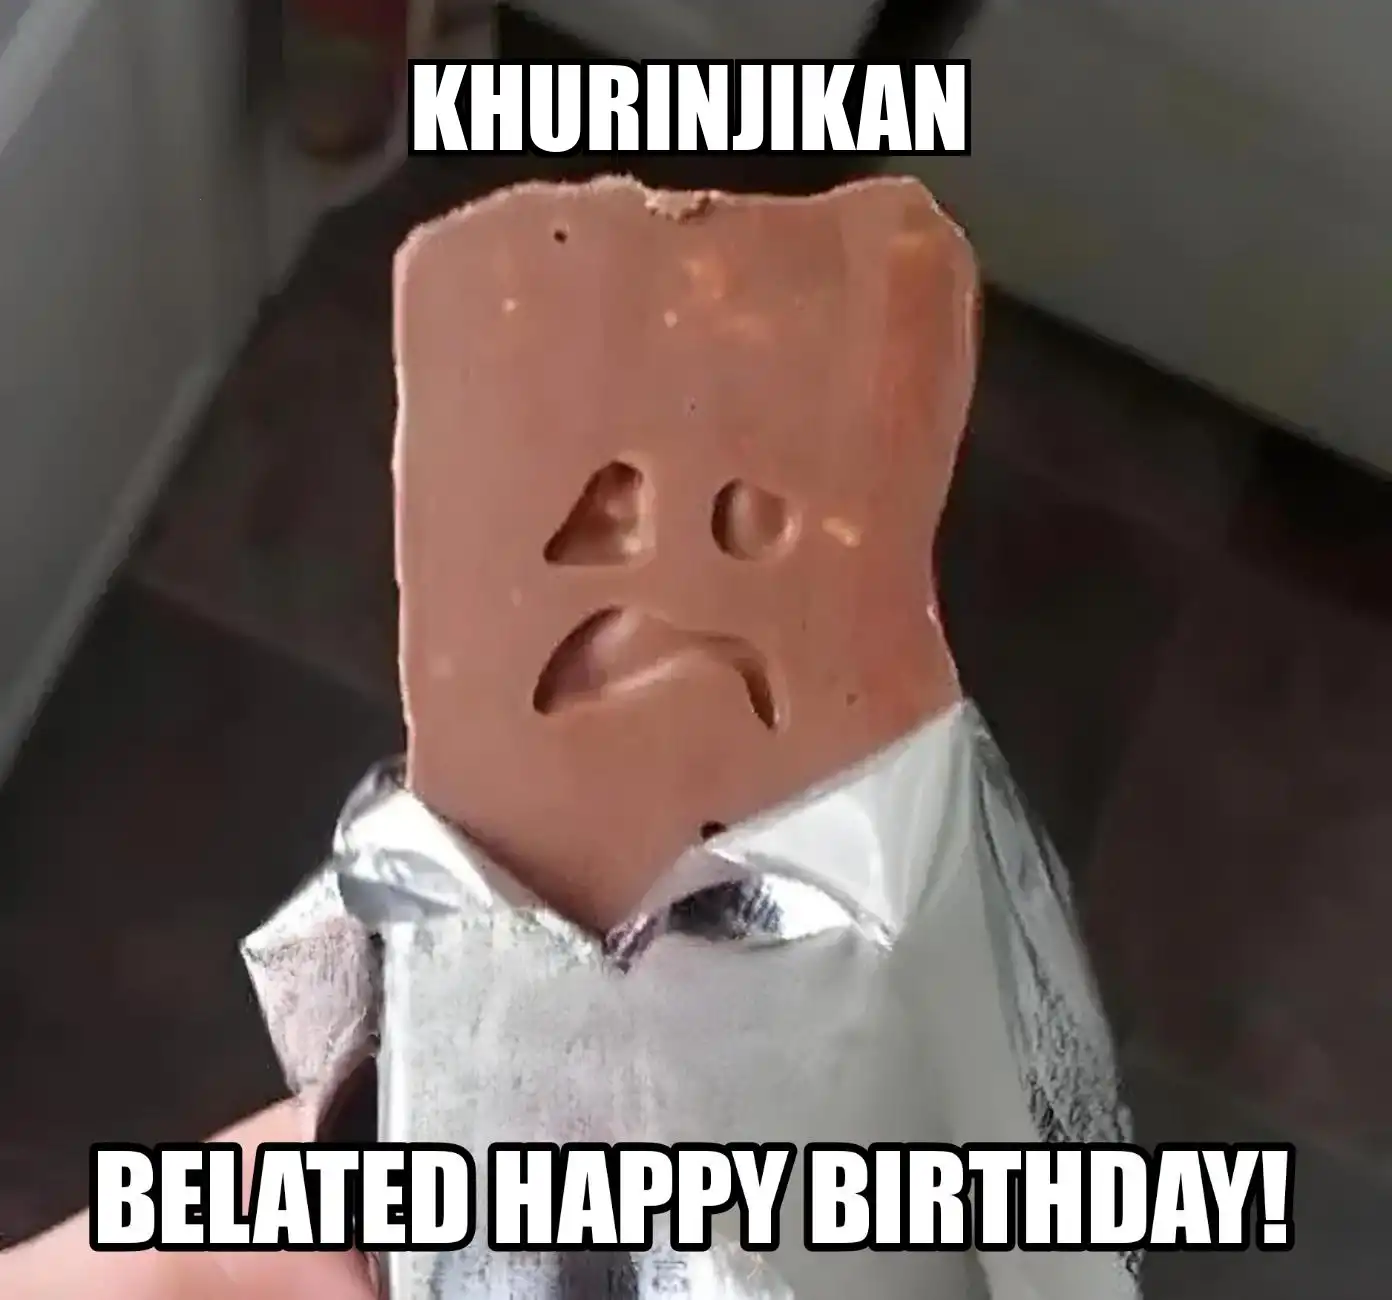 Happy Birthday Khurinjikan Belated Happy Birthday Meme